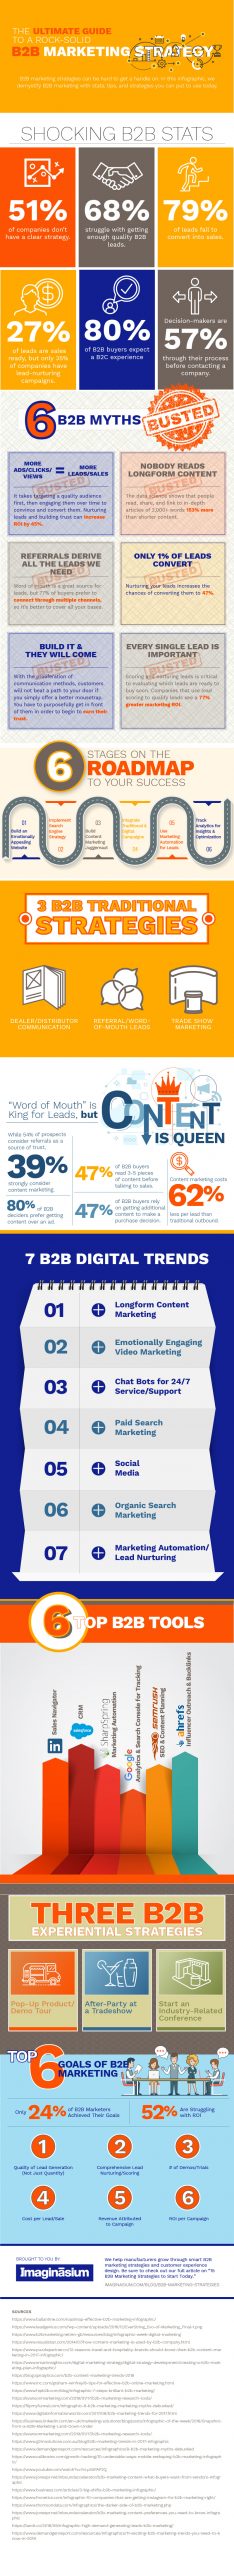 Imaginasium-B2B-Marketing-Strategy-Infographic